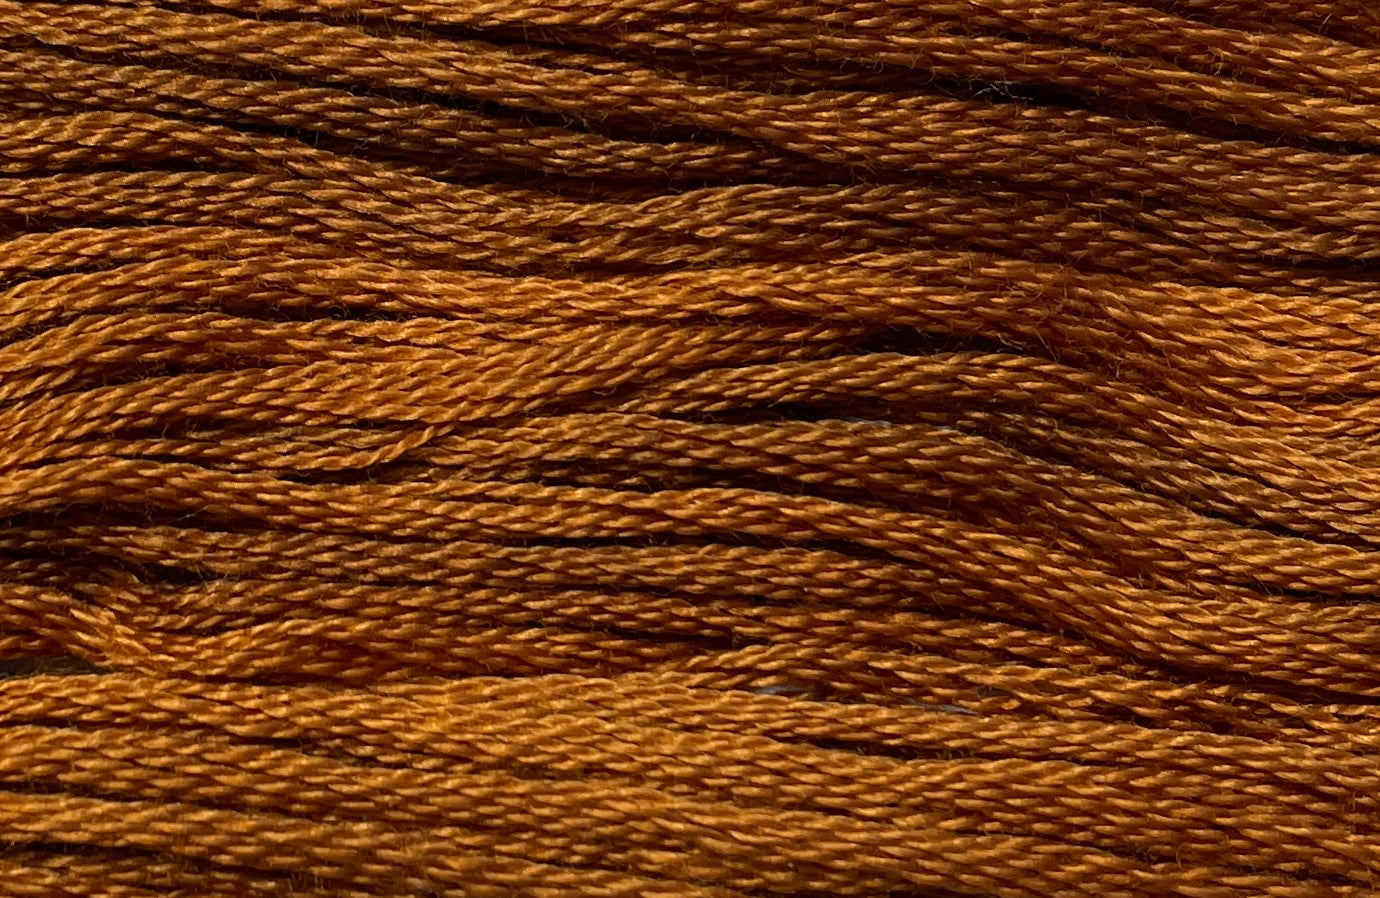 Nutmeg - Gentle Arts Cotton Thread - 5 yard Skein - Cross Stitch Floss, Thread & Floss, Thread & Floss, The Crafty Grimalkin - A Cross Stitch Store